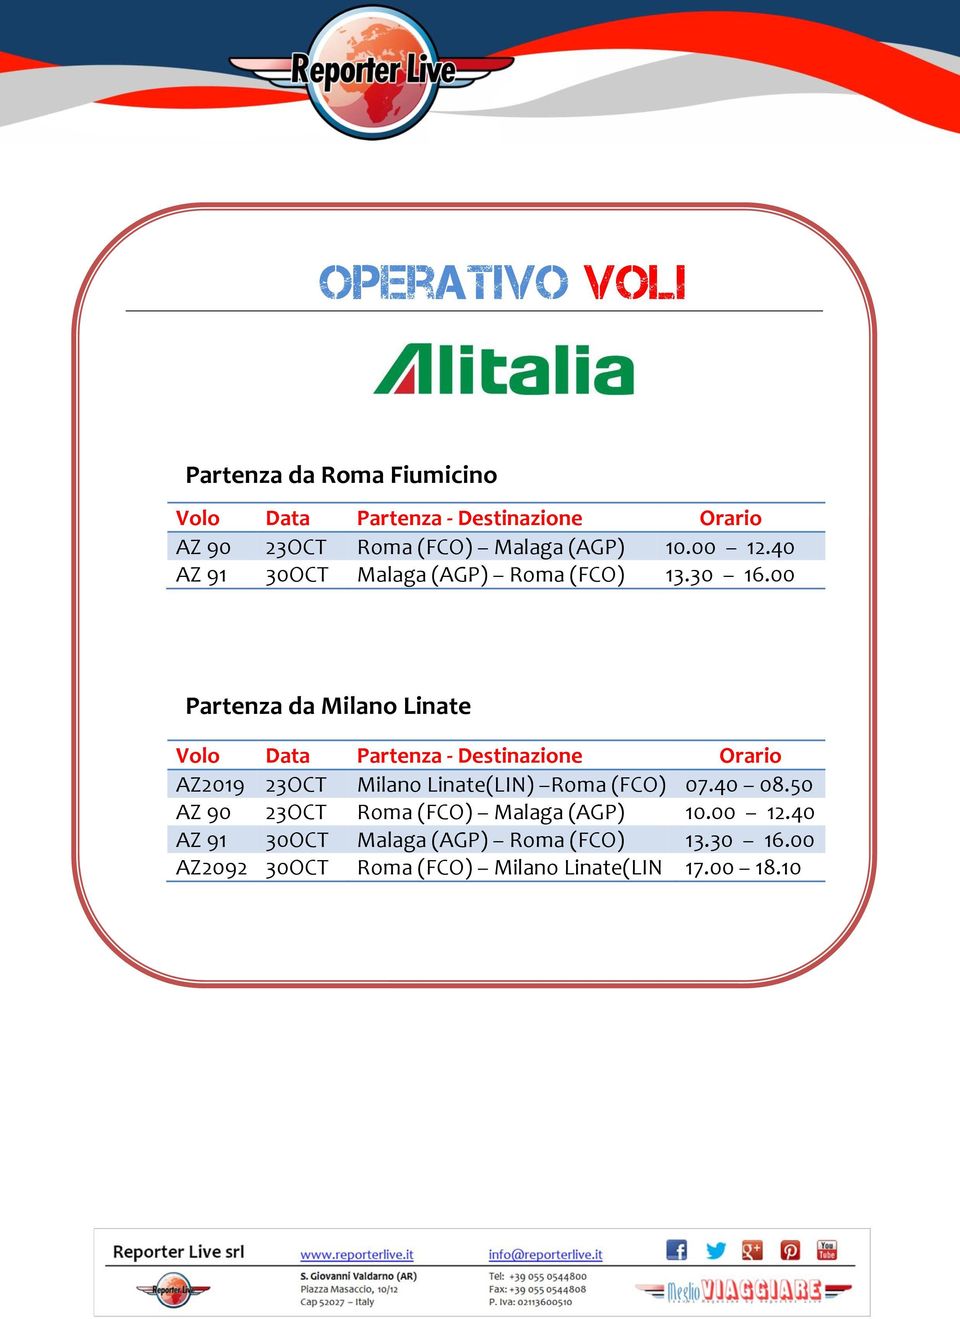 00 Partenza da Milano Linate Volo Data Partenza - Destinazione Orario AZ2019 23OCT Milano Linate(LIN) Roma (FCO)